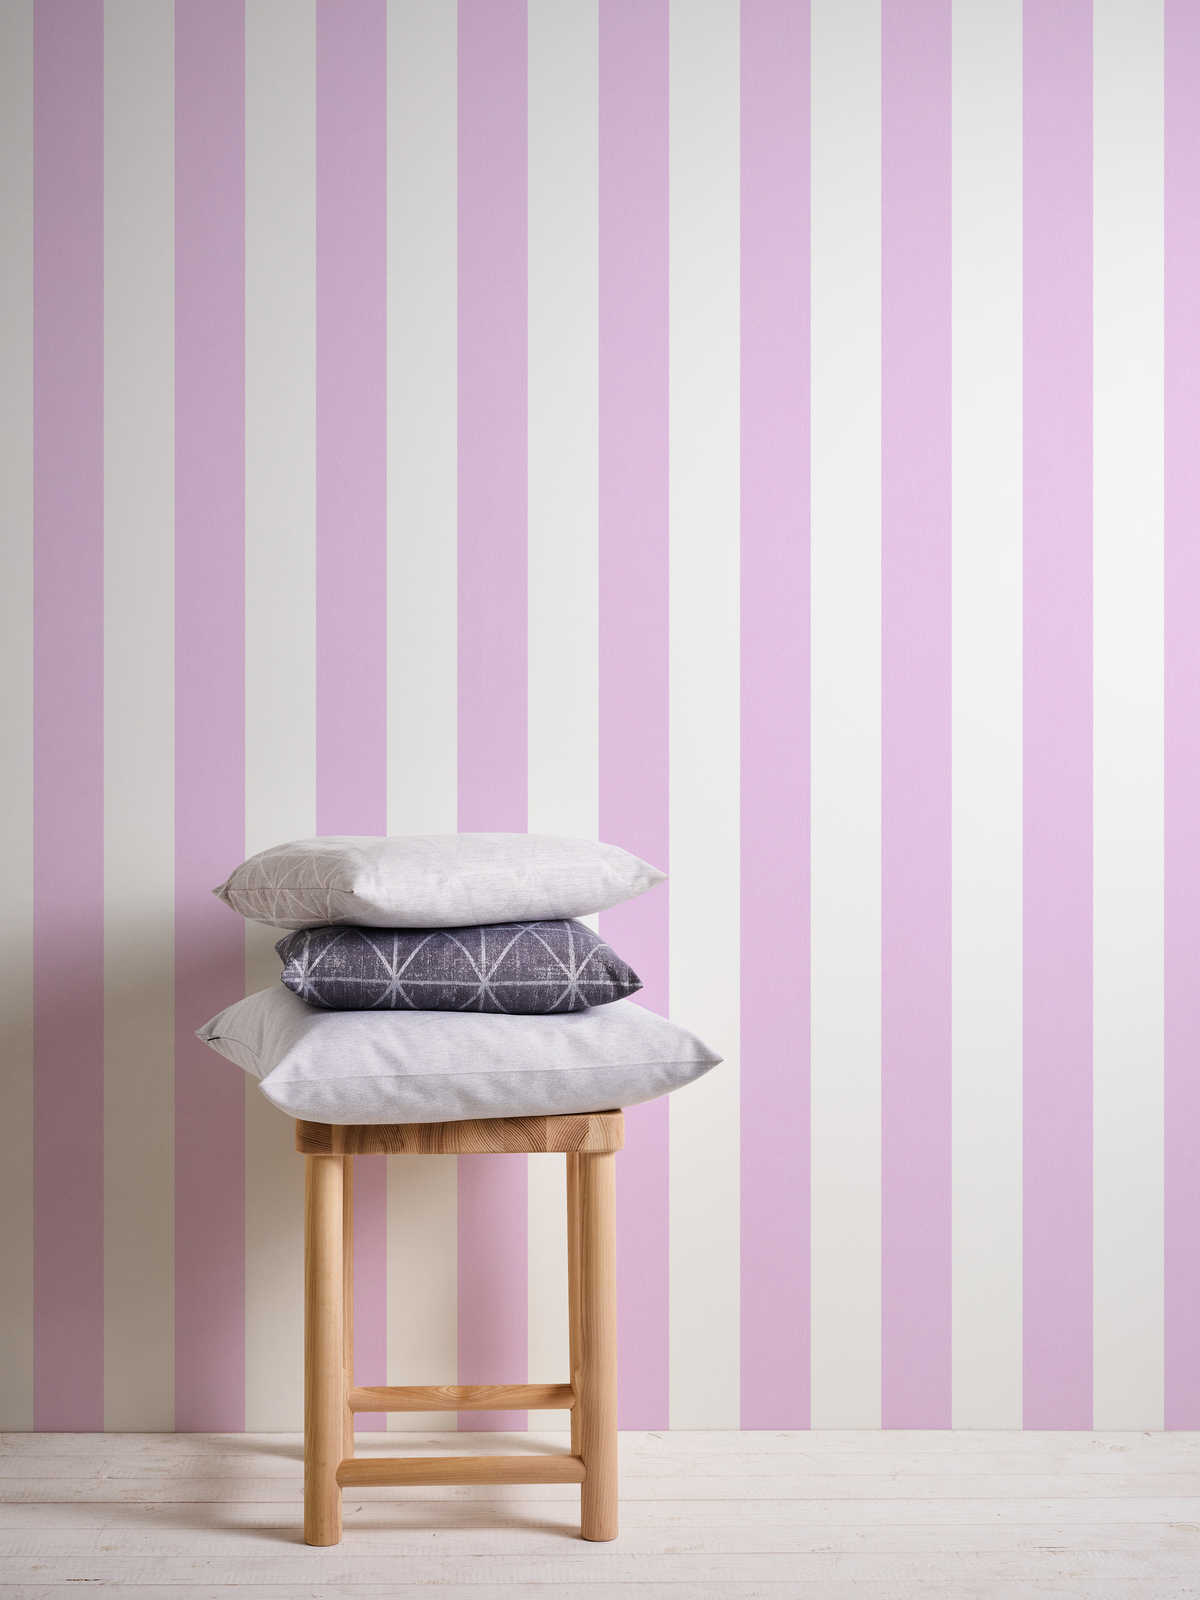             Papier peint chambre enfant fille rayures verticales - rose, blanc
        